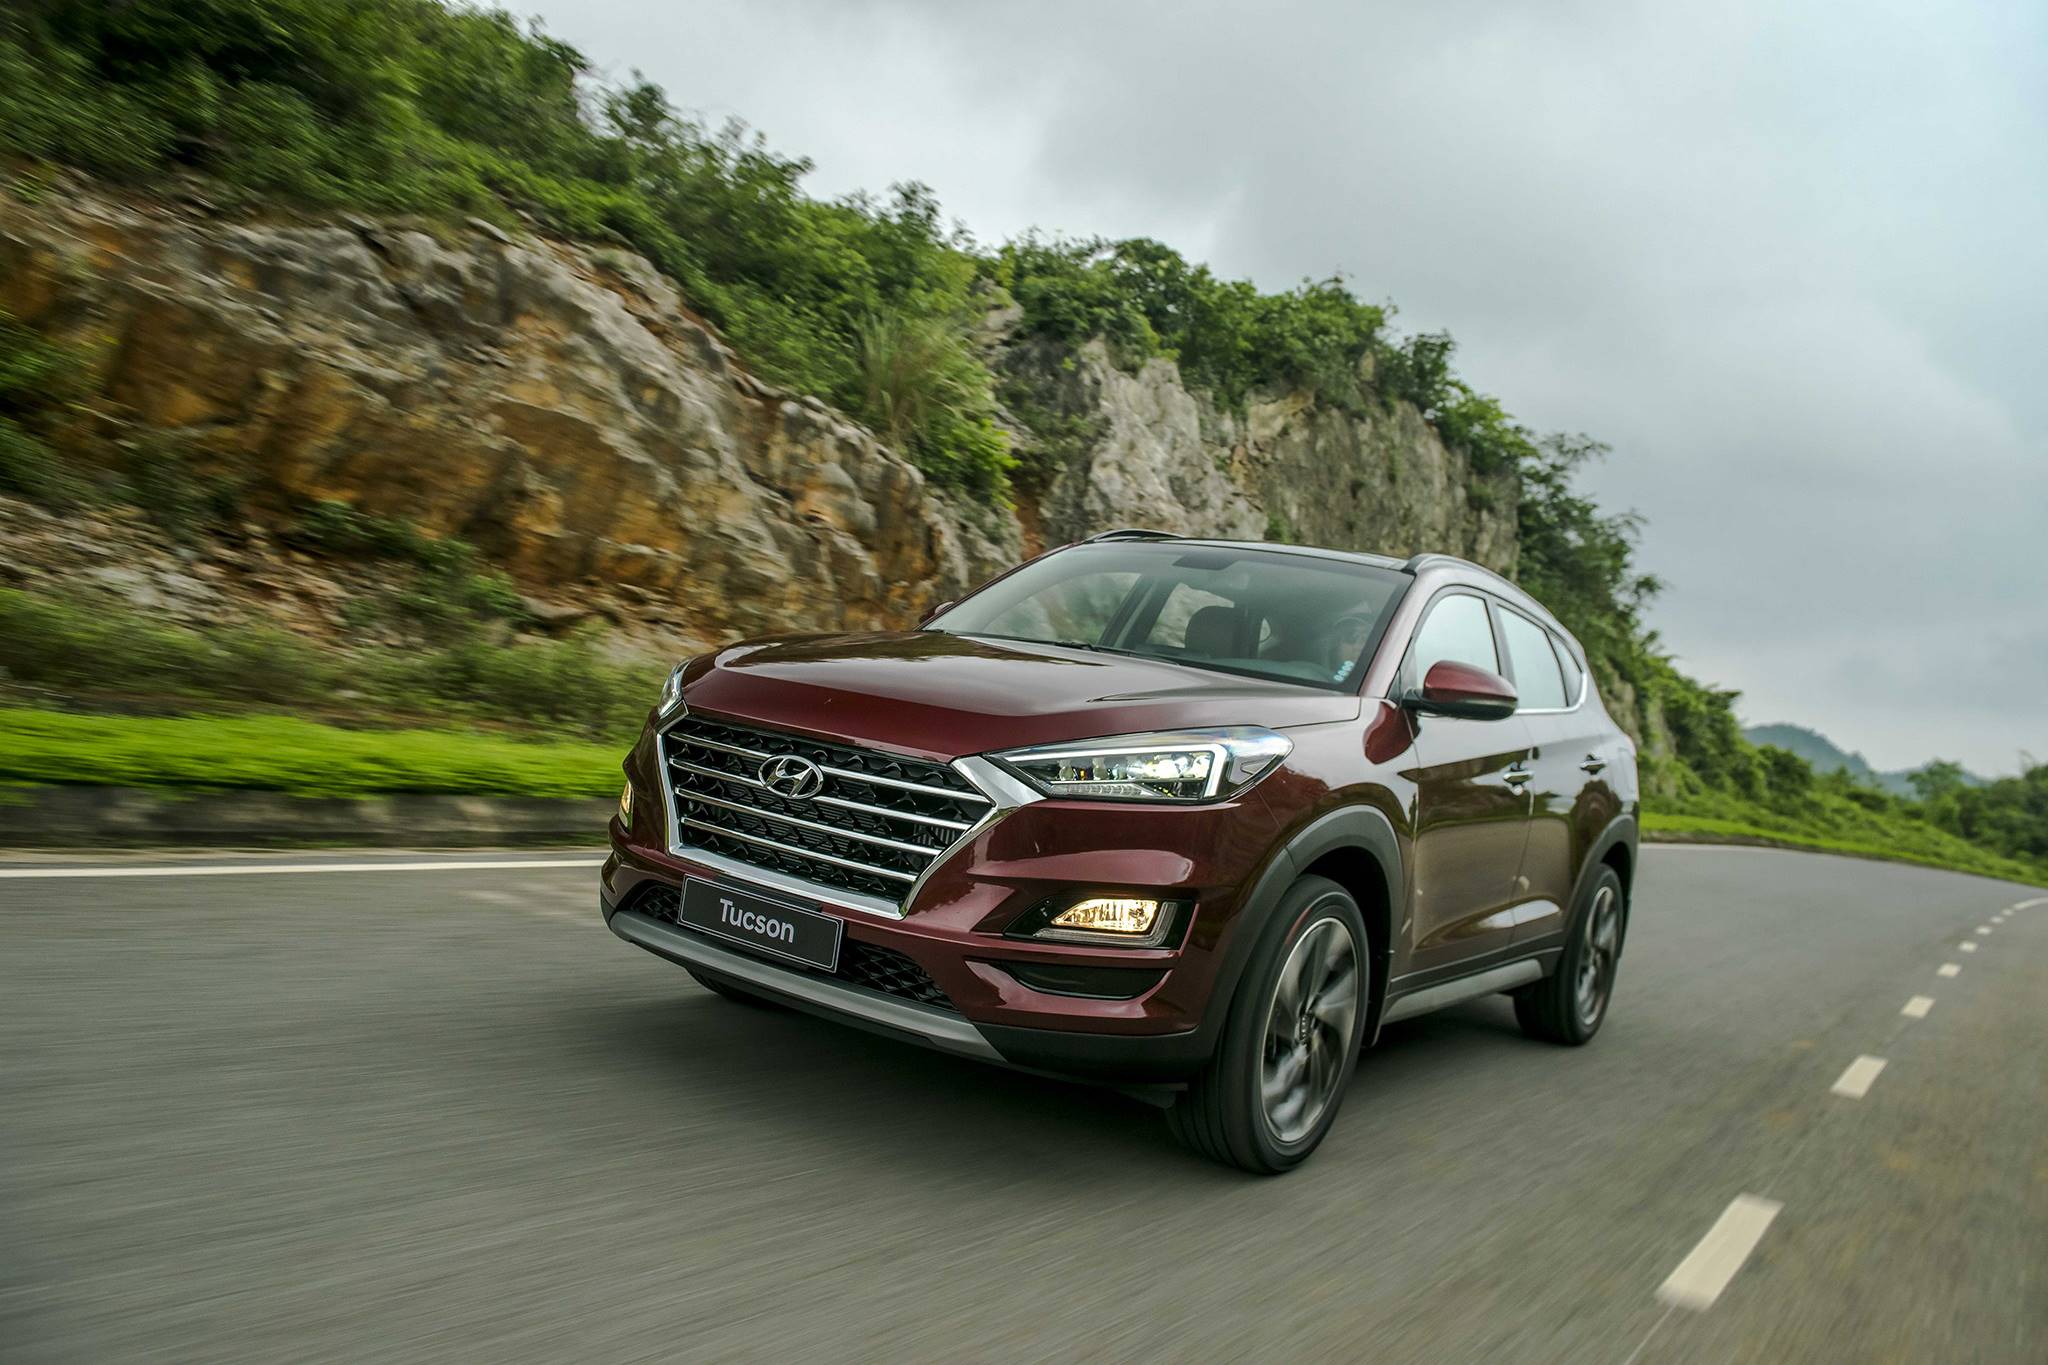 Hyundai Elantra và Tucson 2019 chính thức ra mắt tại Việt Nam, giá bán từ 580 triệu đồng